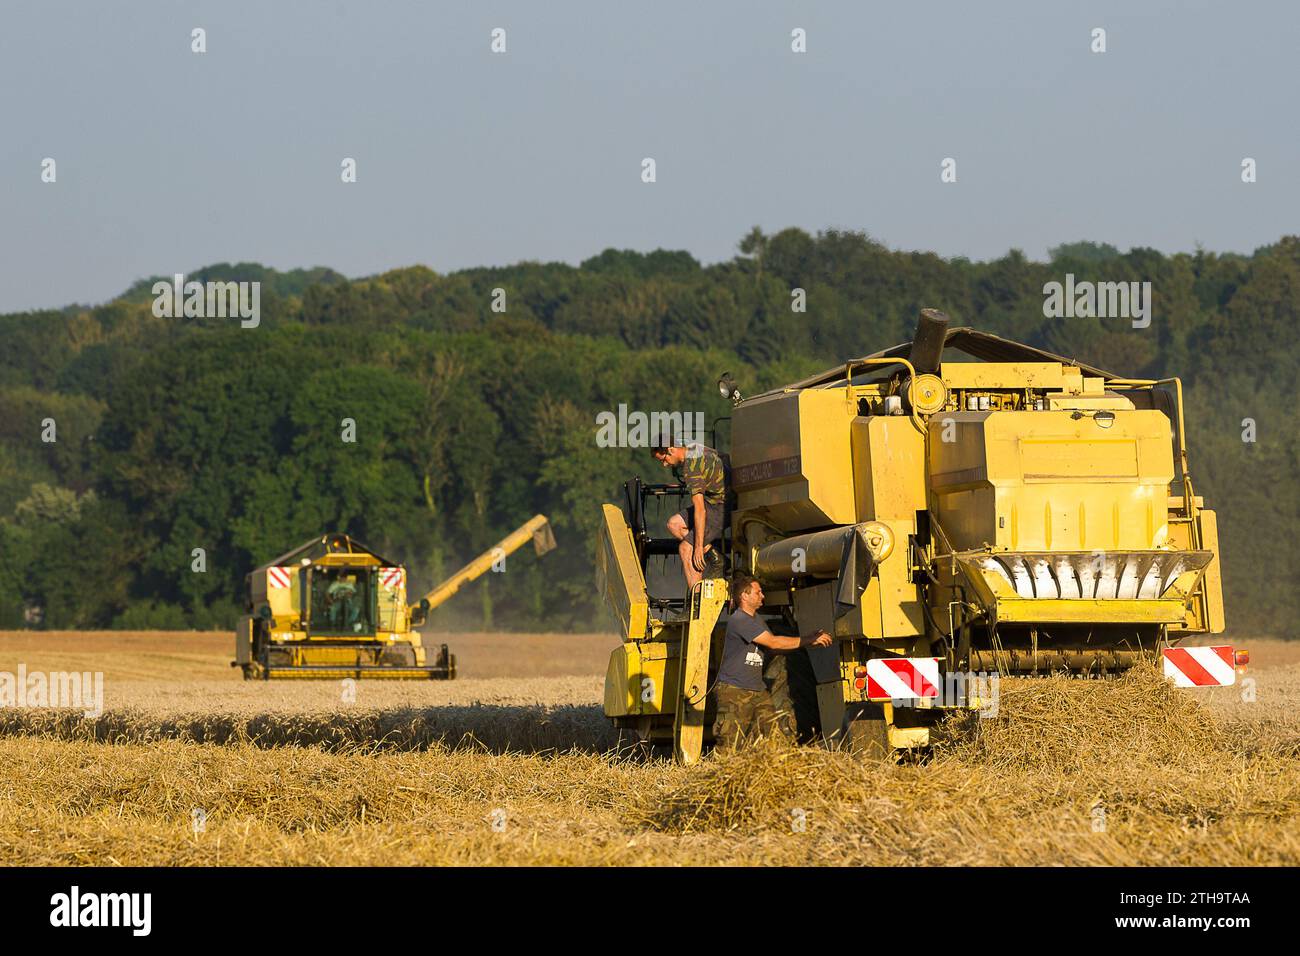 Gli agricoltori approfittano di qualche giorno senza pioggia per raccogliere i loro campi. I semi vengono versati direttamente in un camion. La mietitrebbia assicura un processo Foto Stock